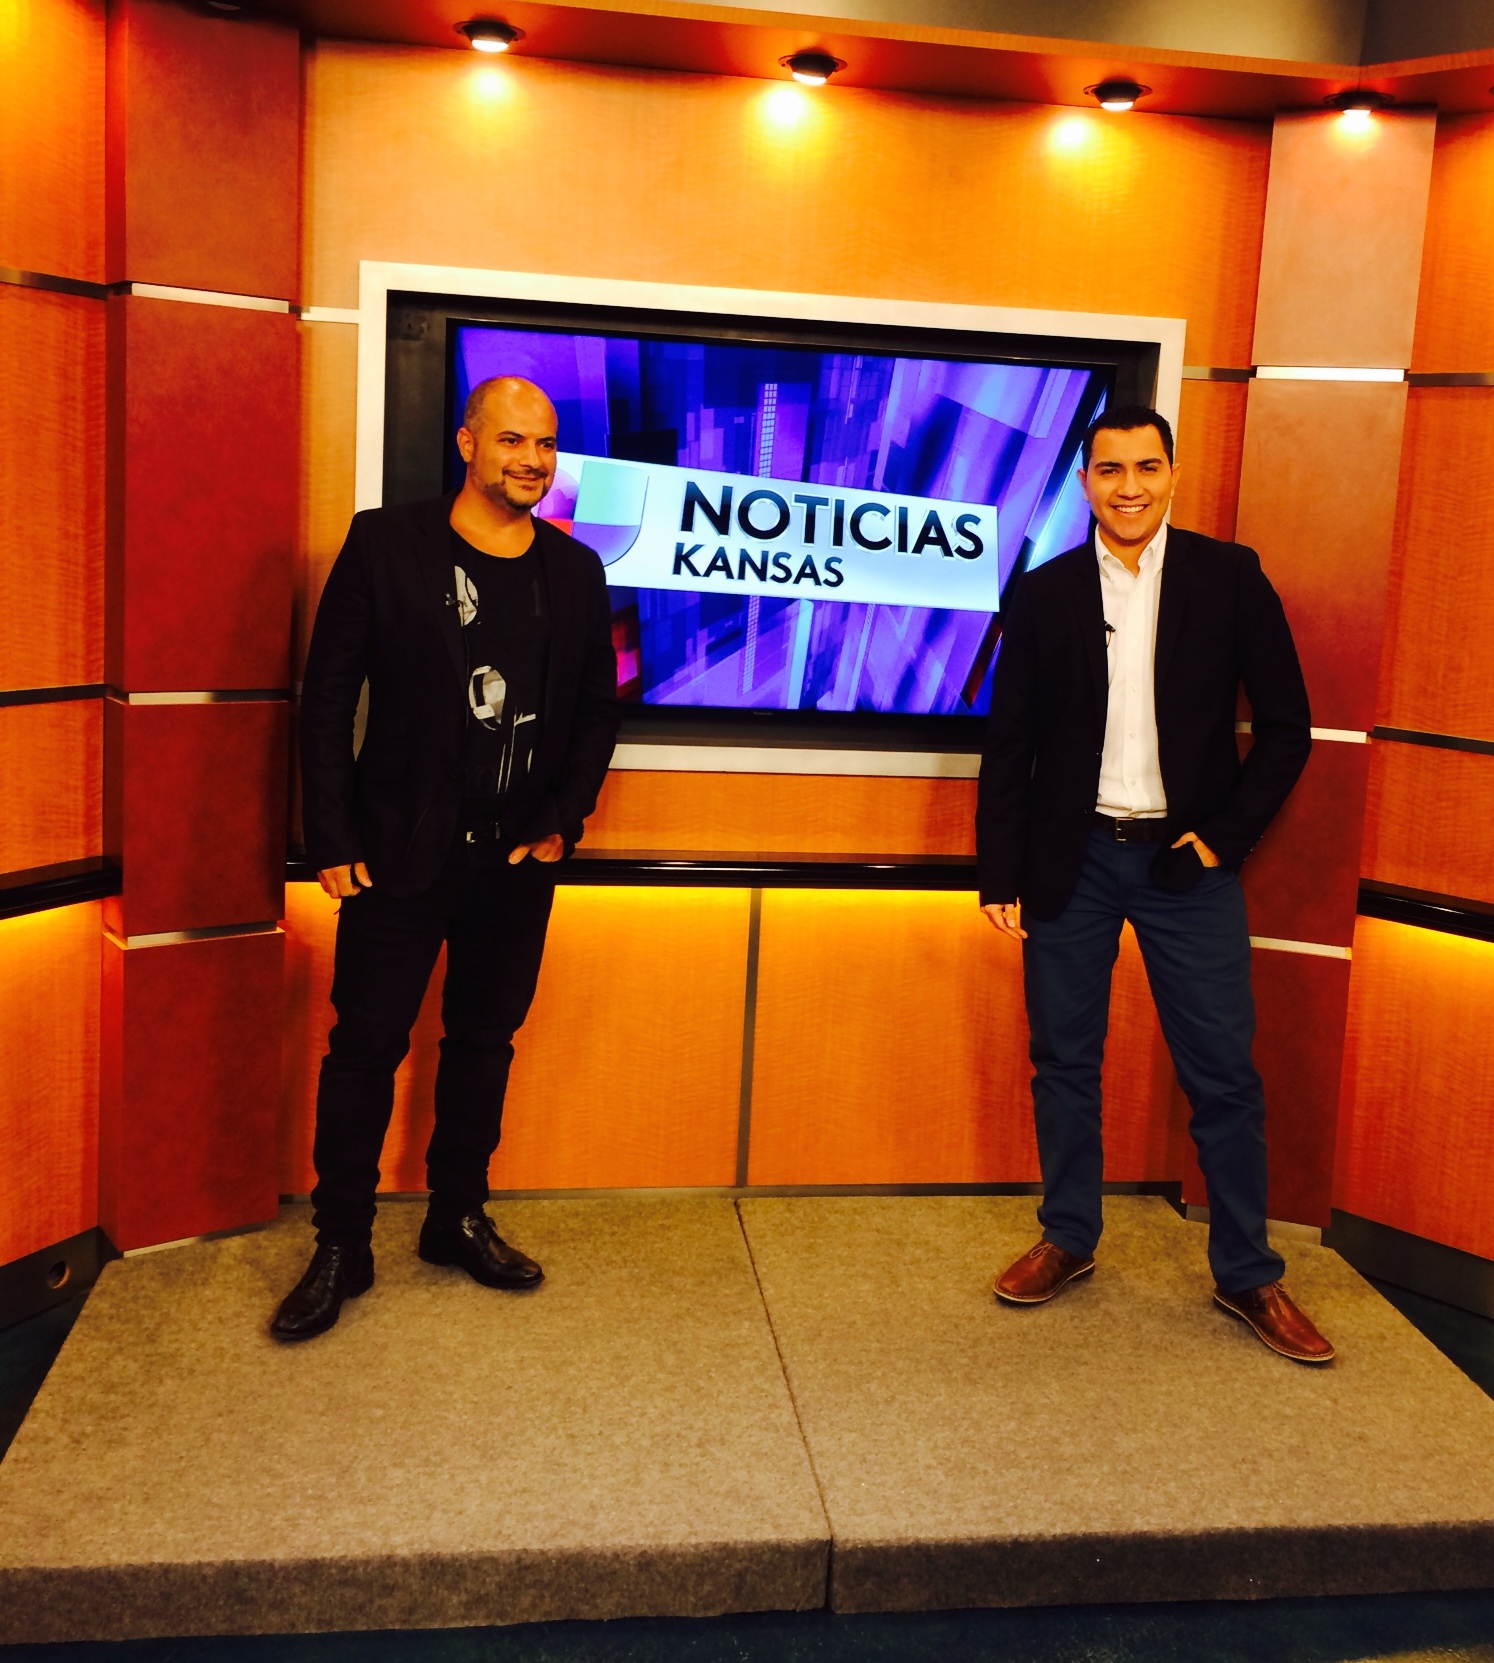 Gaston Rivero and Fernando Palma - Univision